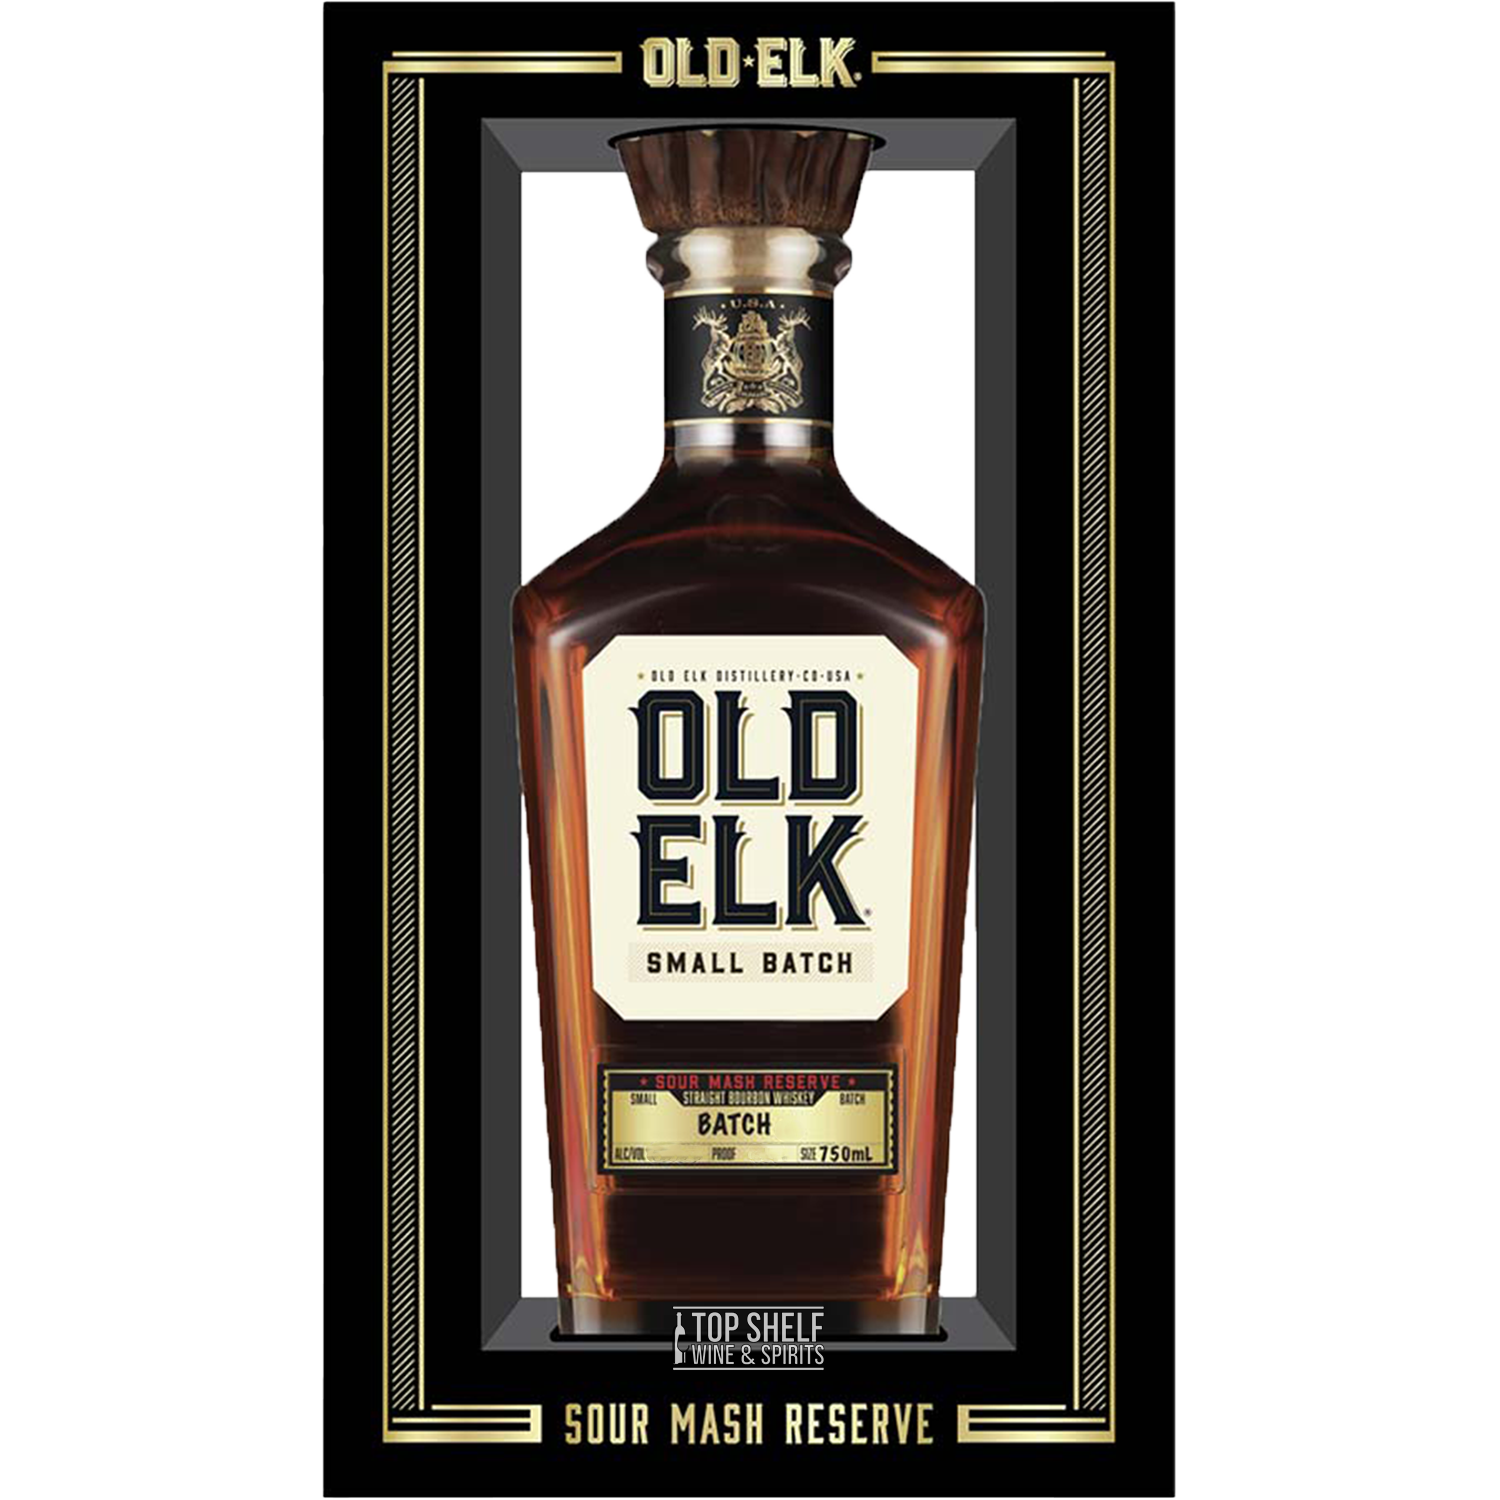 Old Elk Sour Mash Reserve Bourbon (Batch 1)